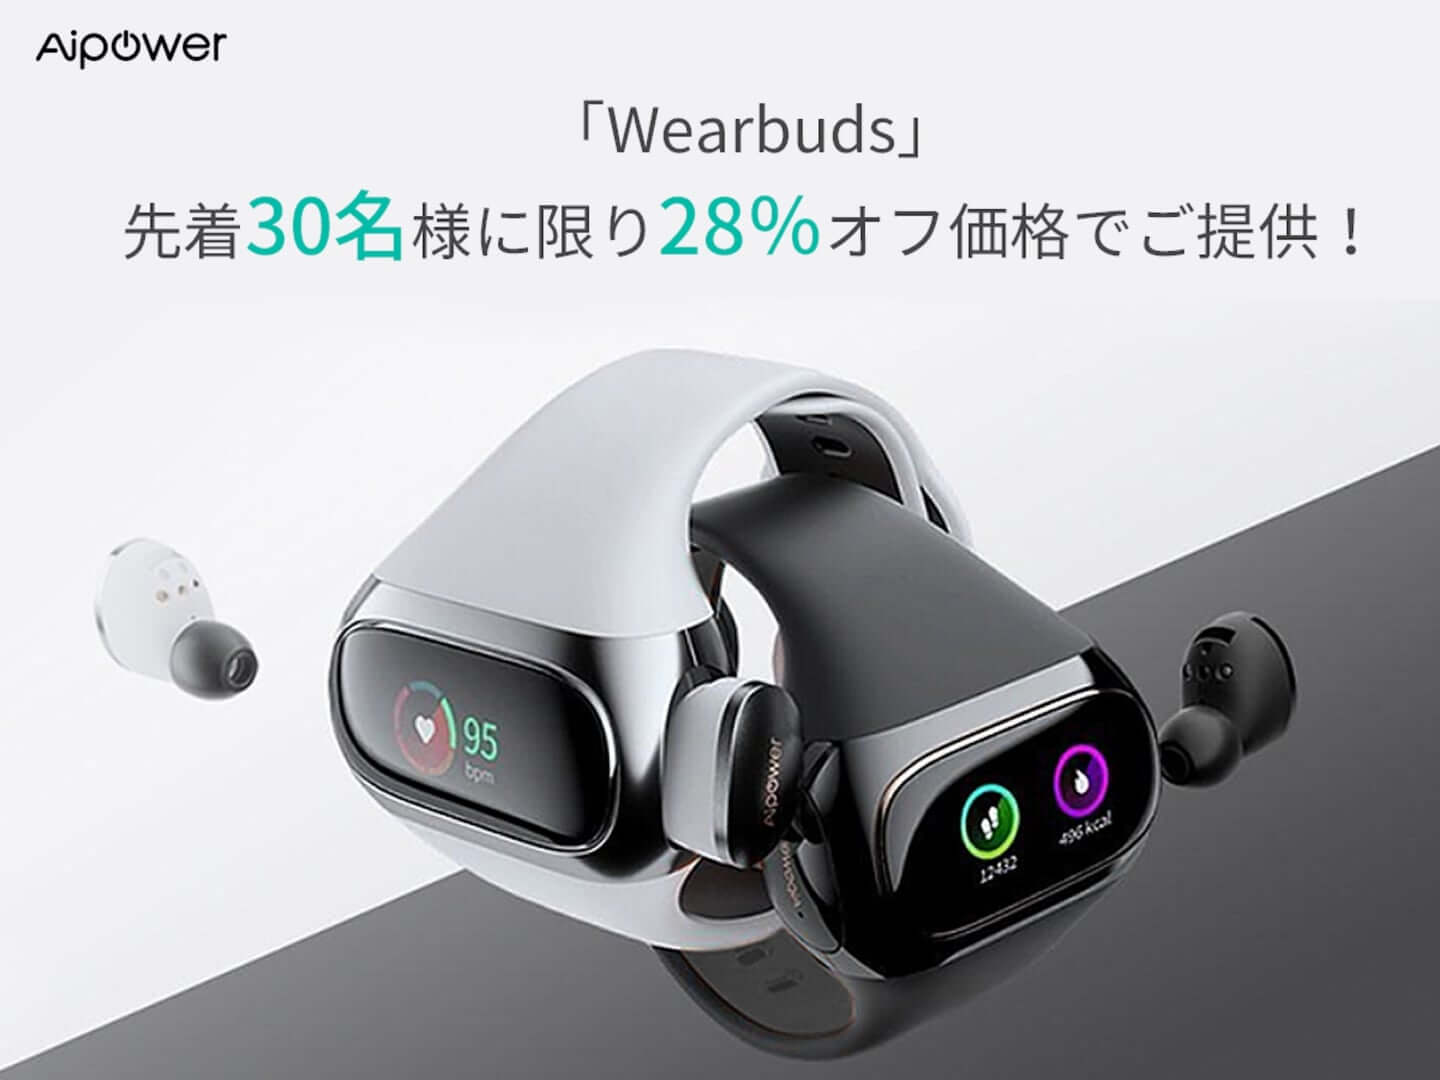 スマートウォッチに充電、収納ができる完全ワイヤレスイヤホン「Wearbuds」ついに日本上陸！ sub1-14-1440x1080